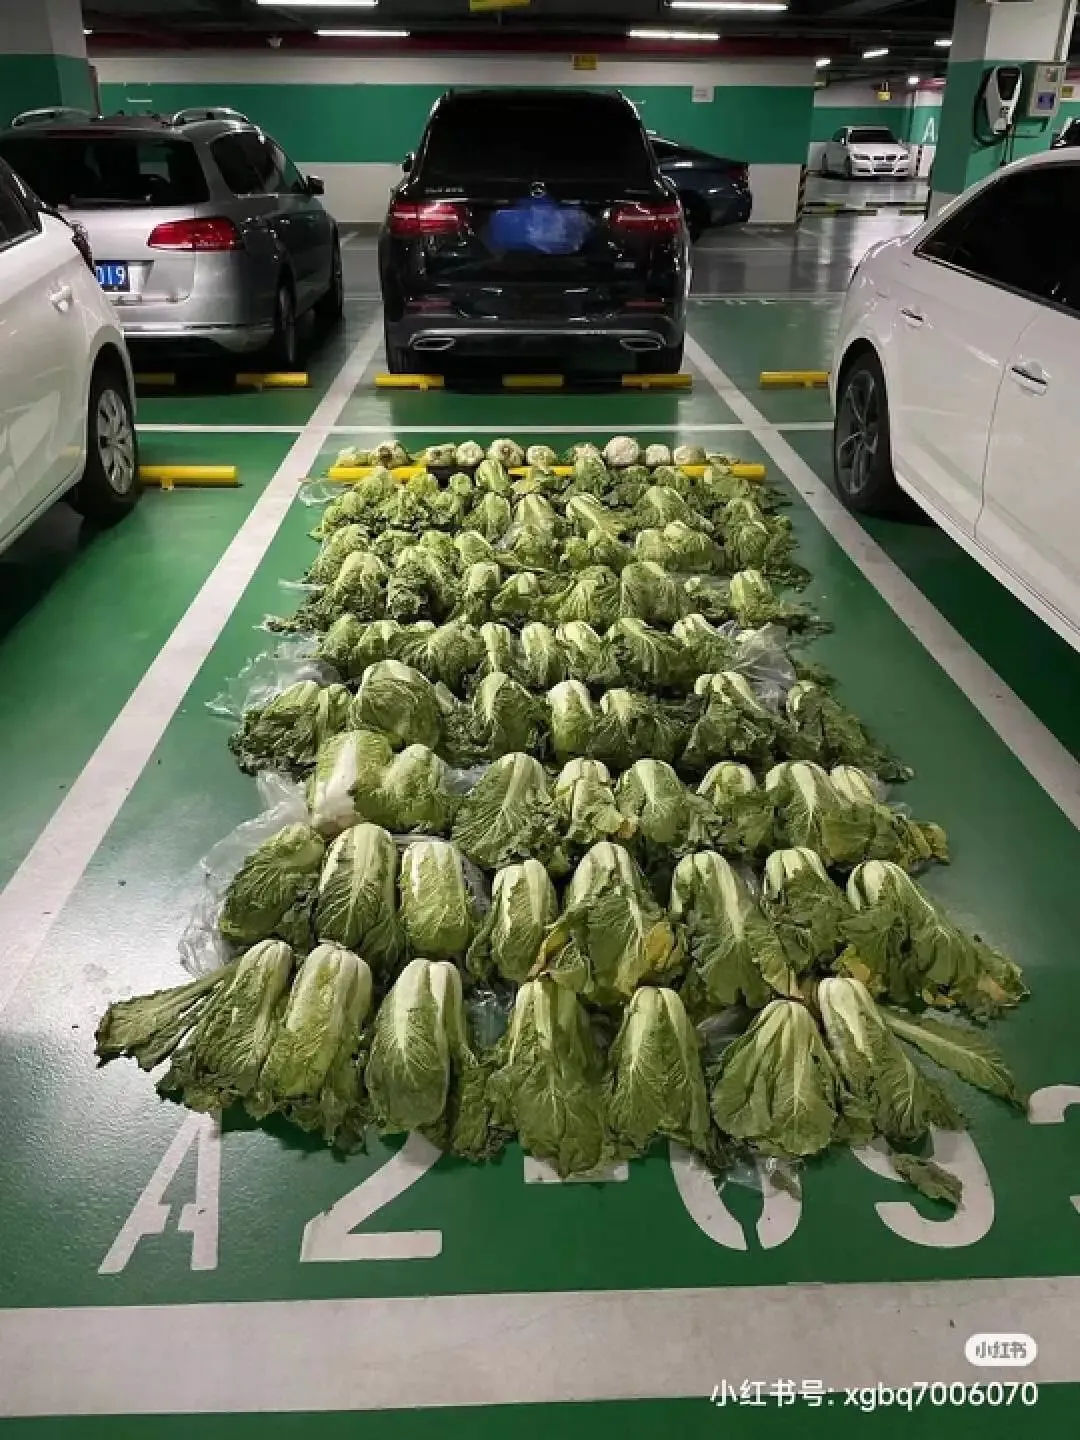 地下停车场里的大白菜丨图源：小红书@效果拔群7006070，已获授权